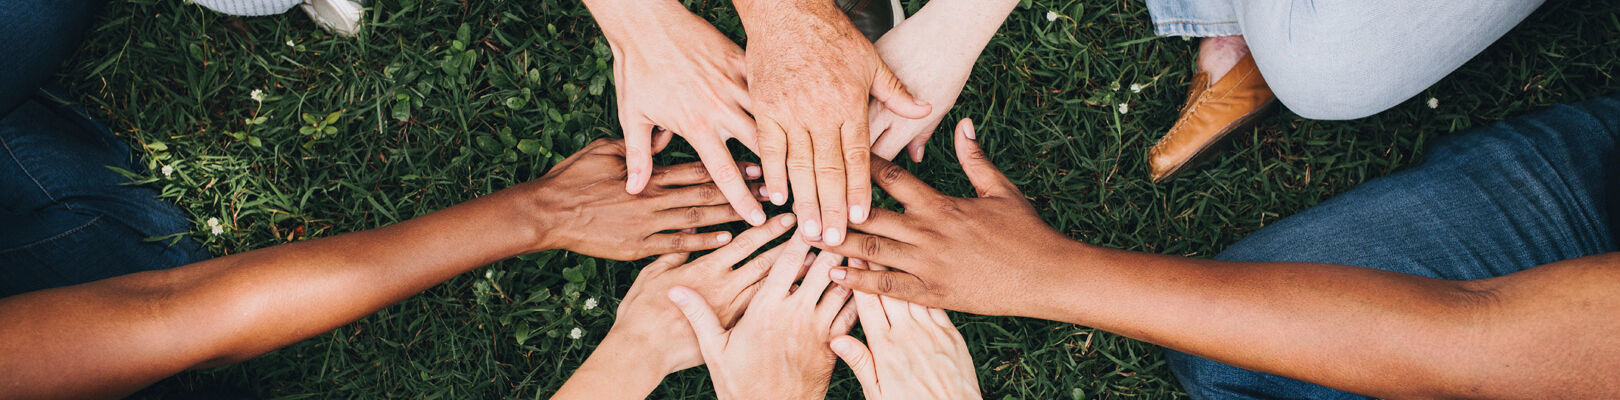 Une équipe de sport ou une association forme un cercle et tendent les mains pour se motiver et s'encourager